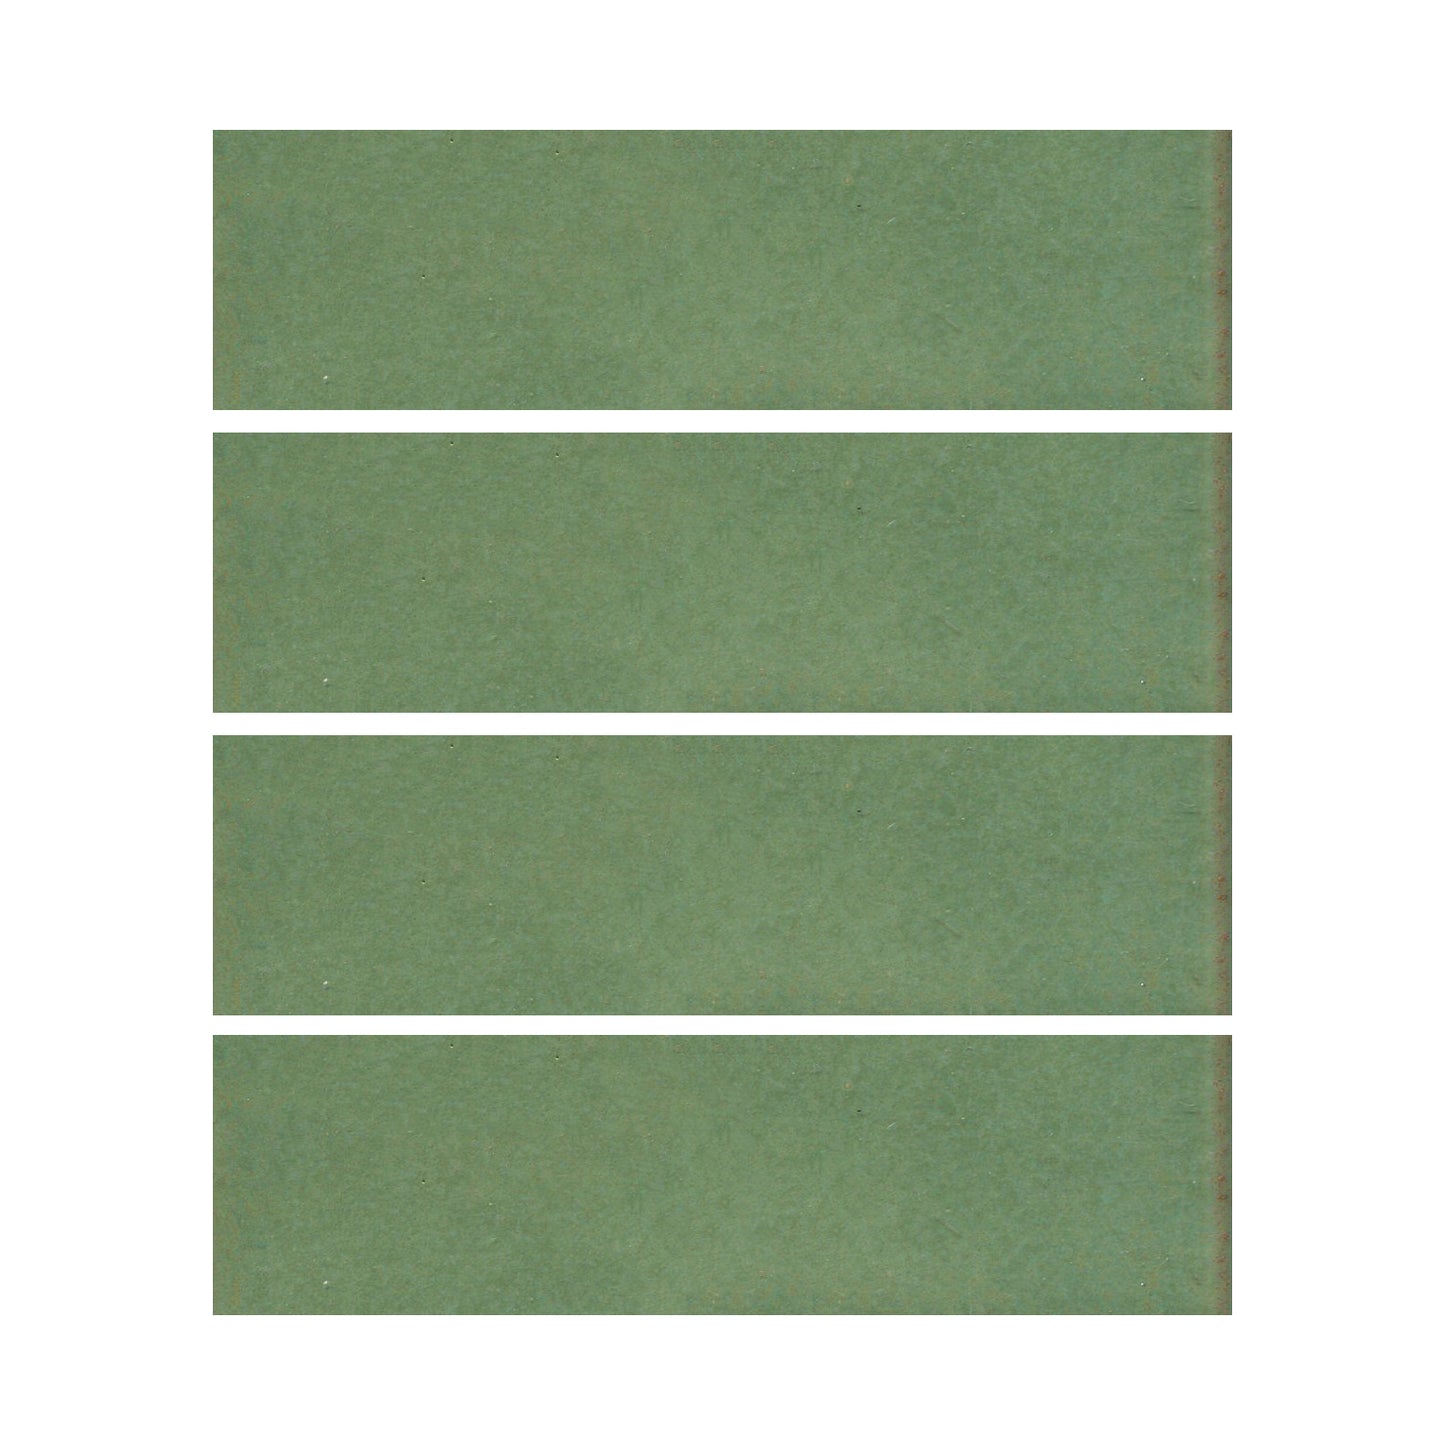 Wasabi green 2x6 field tile